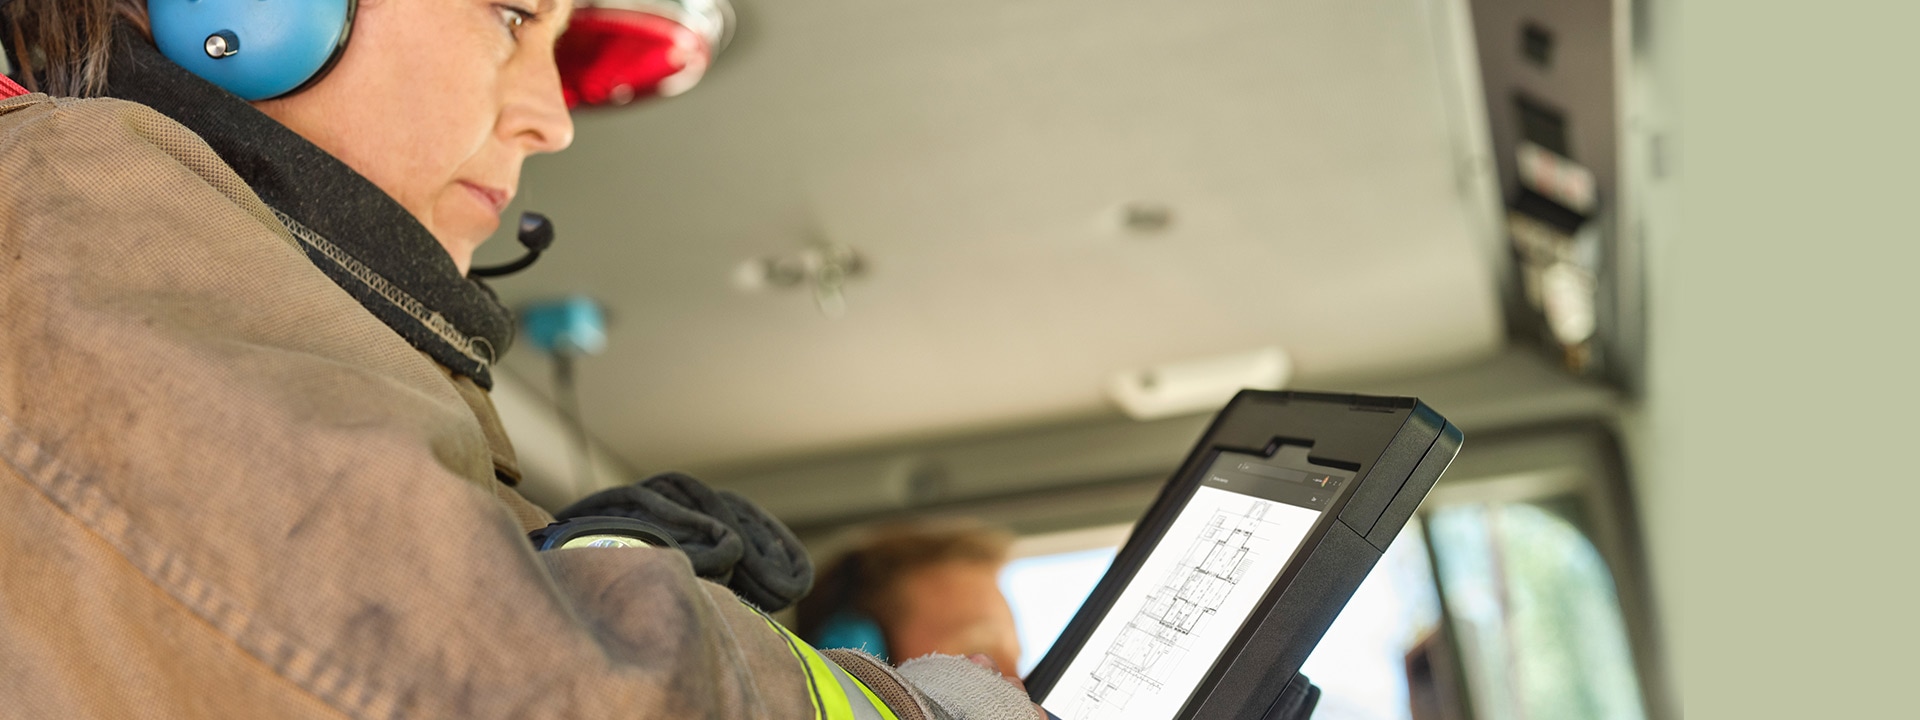 Egy védőruhás nő egy tűzoltóautóban ülve nézi a Surface készülék képernyőjét